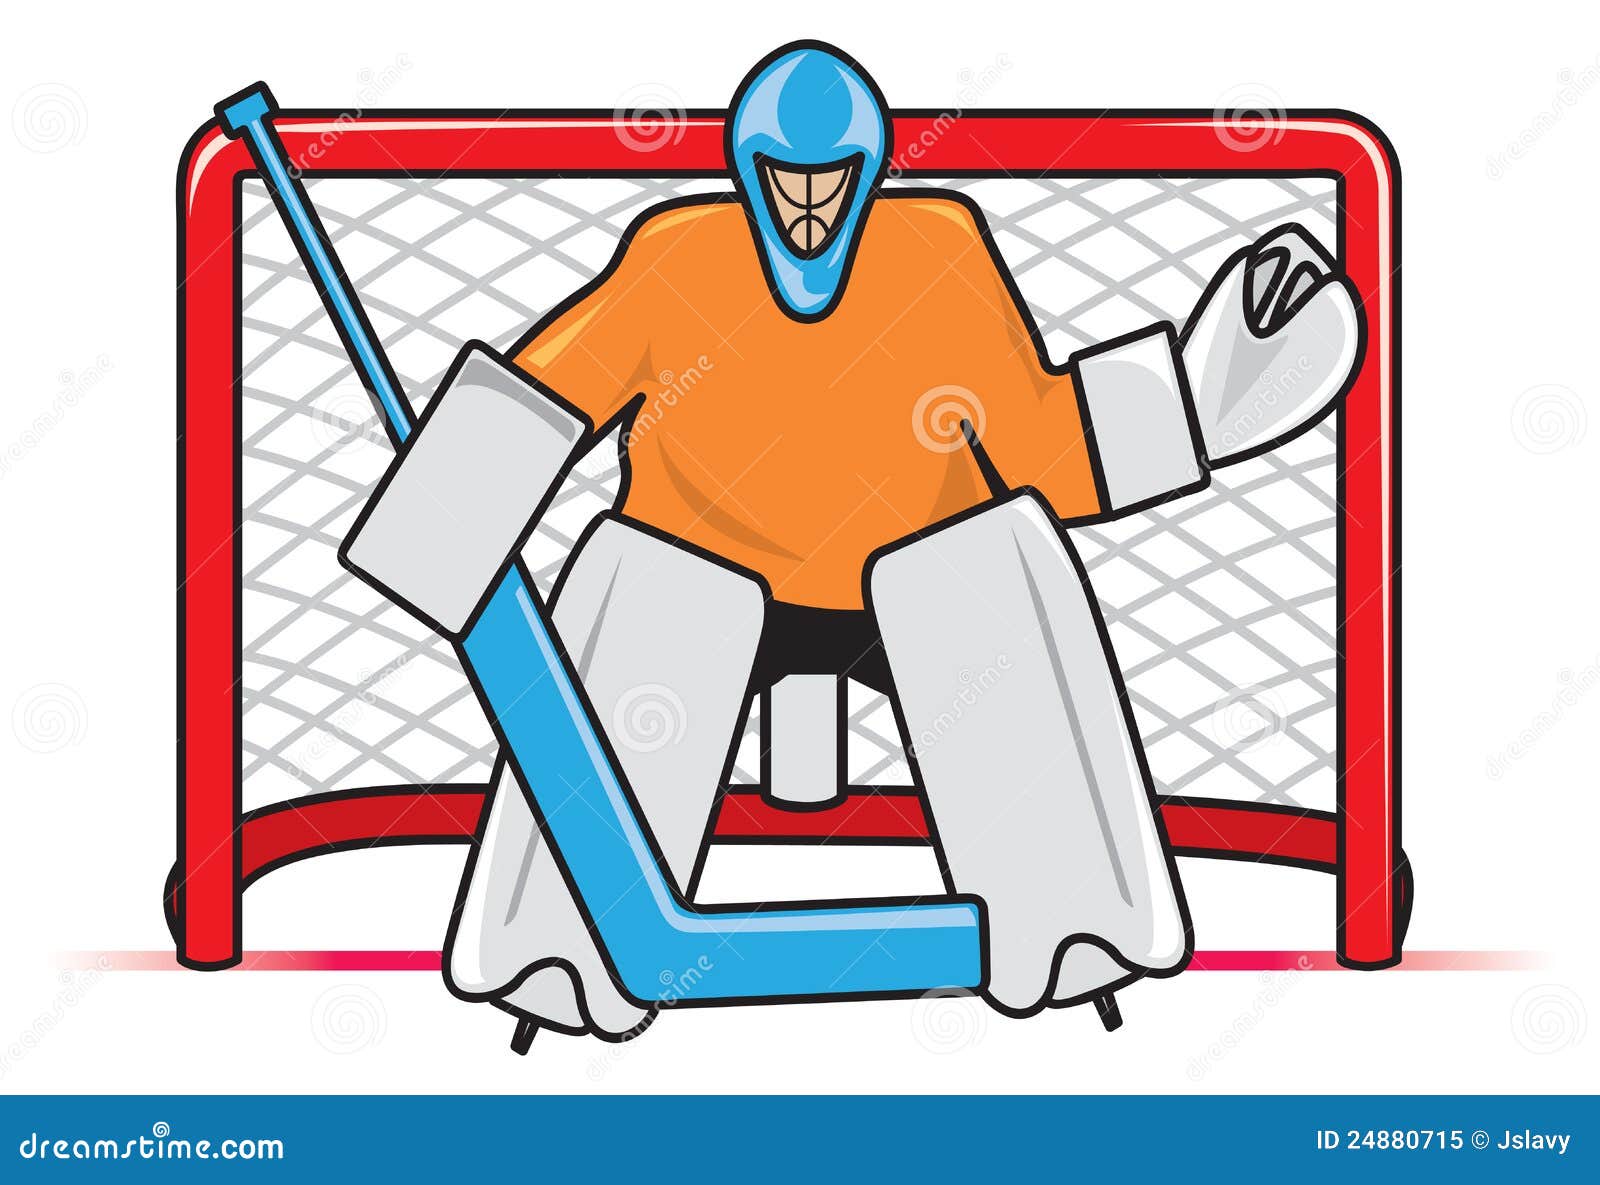 hockey net clipart - photo #36